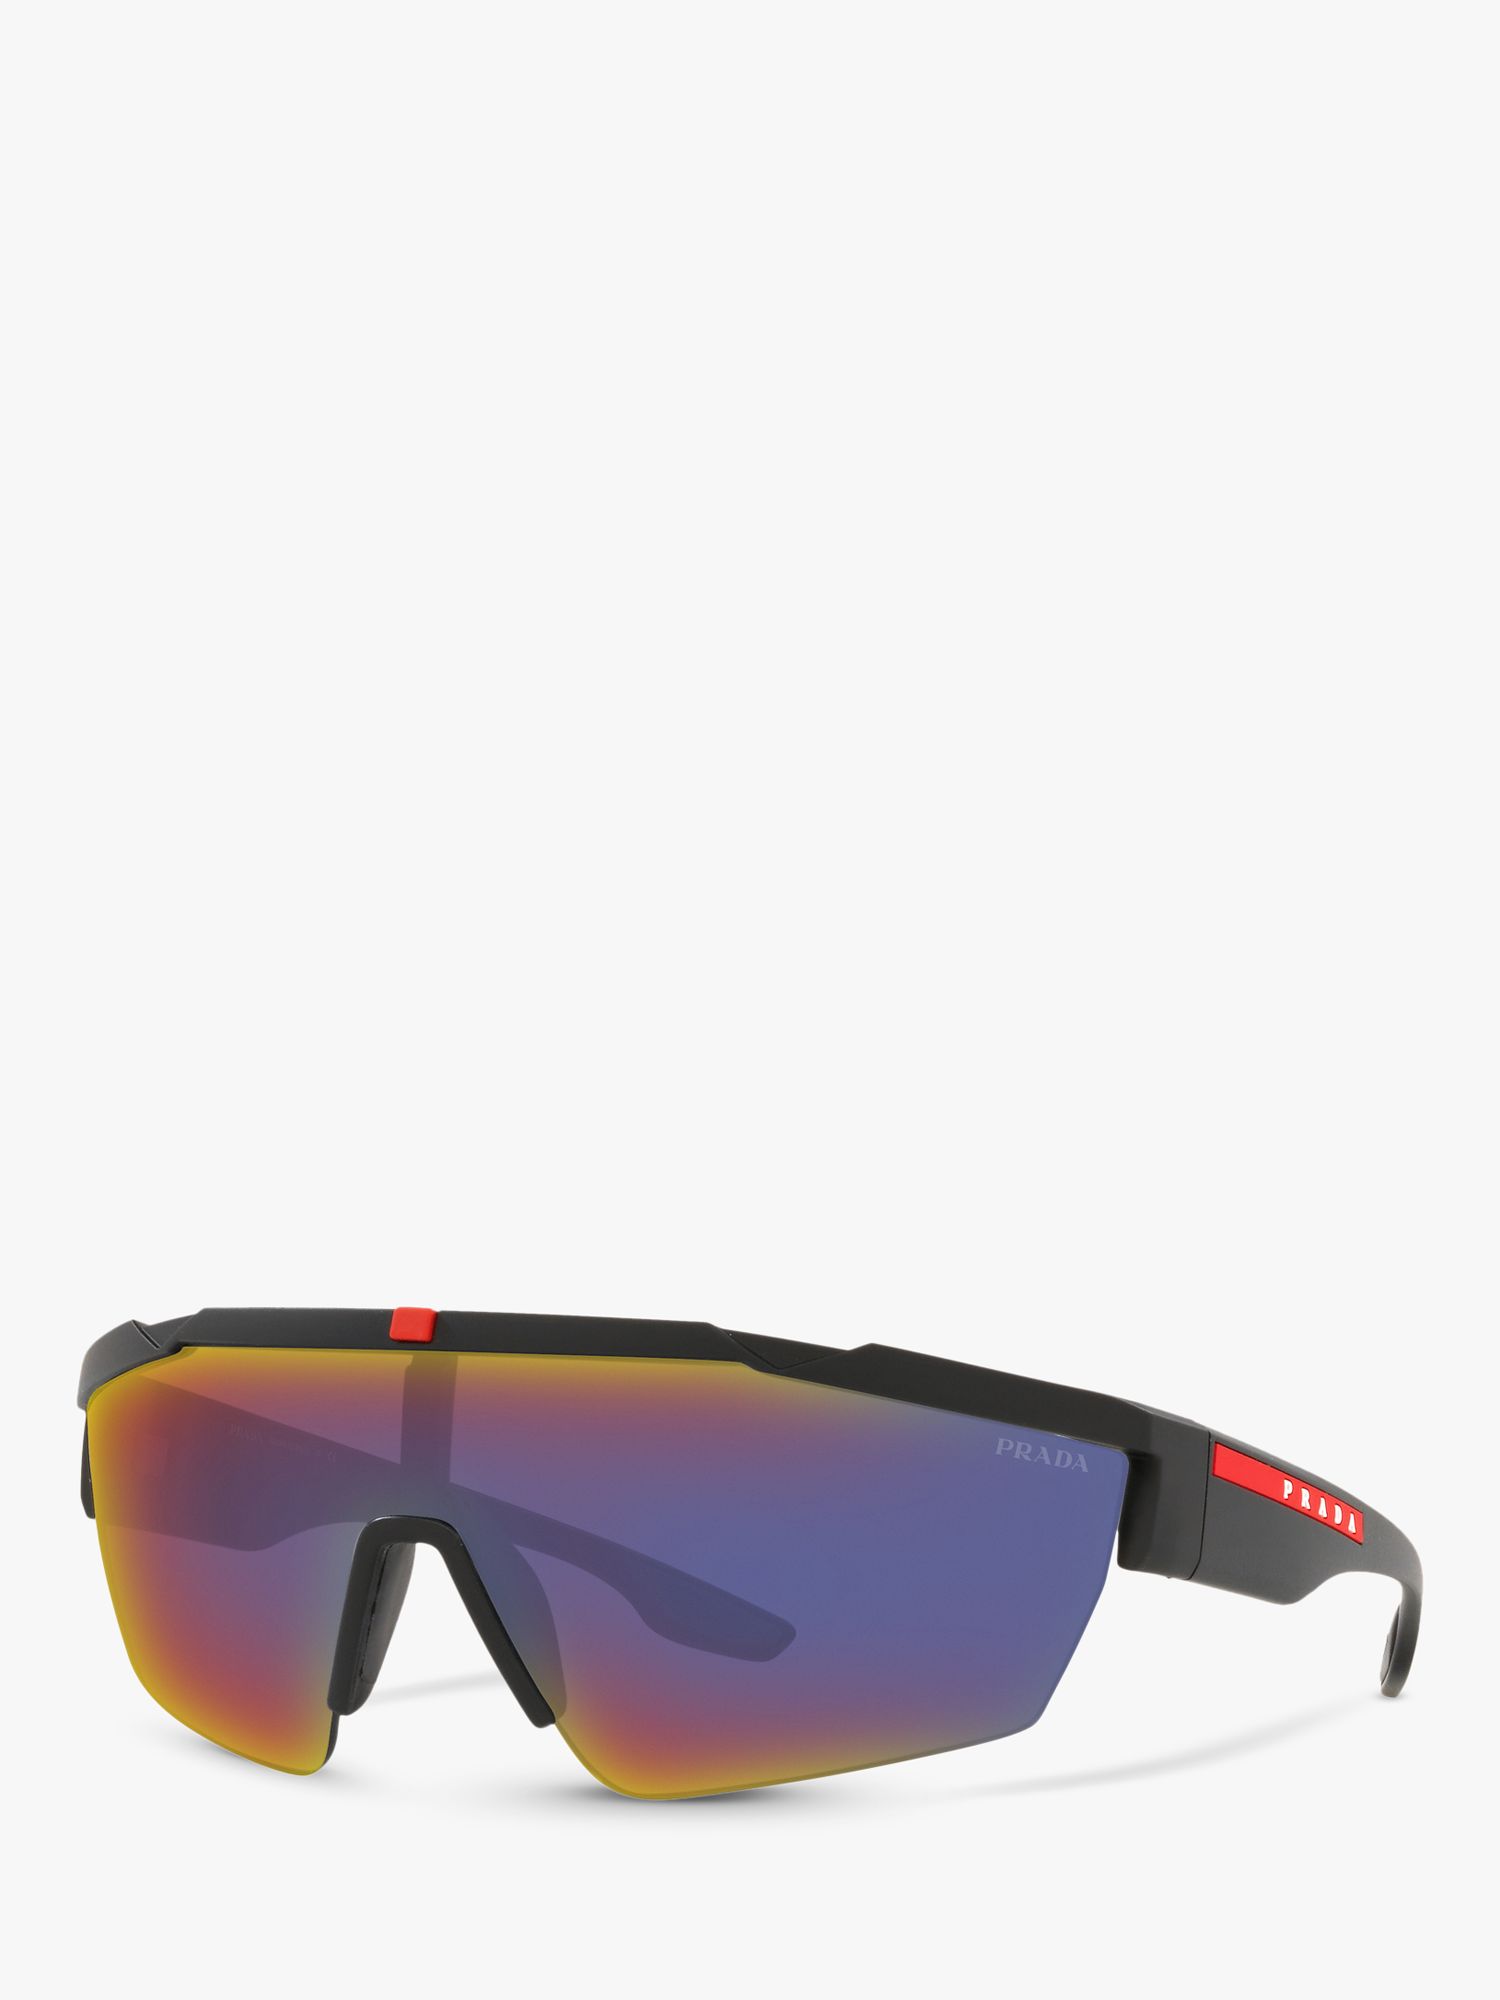 Мужские солнцезащитные очки Prada Linea Rossa PS 03XS, черный каучук/синий